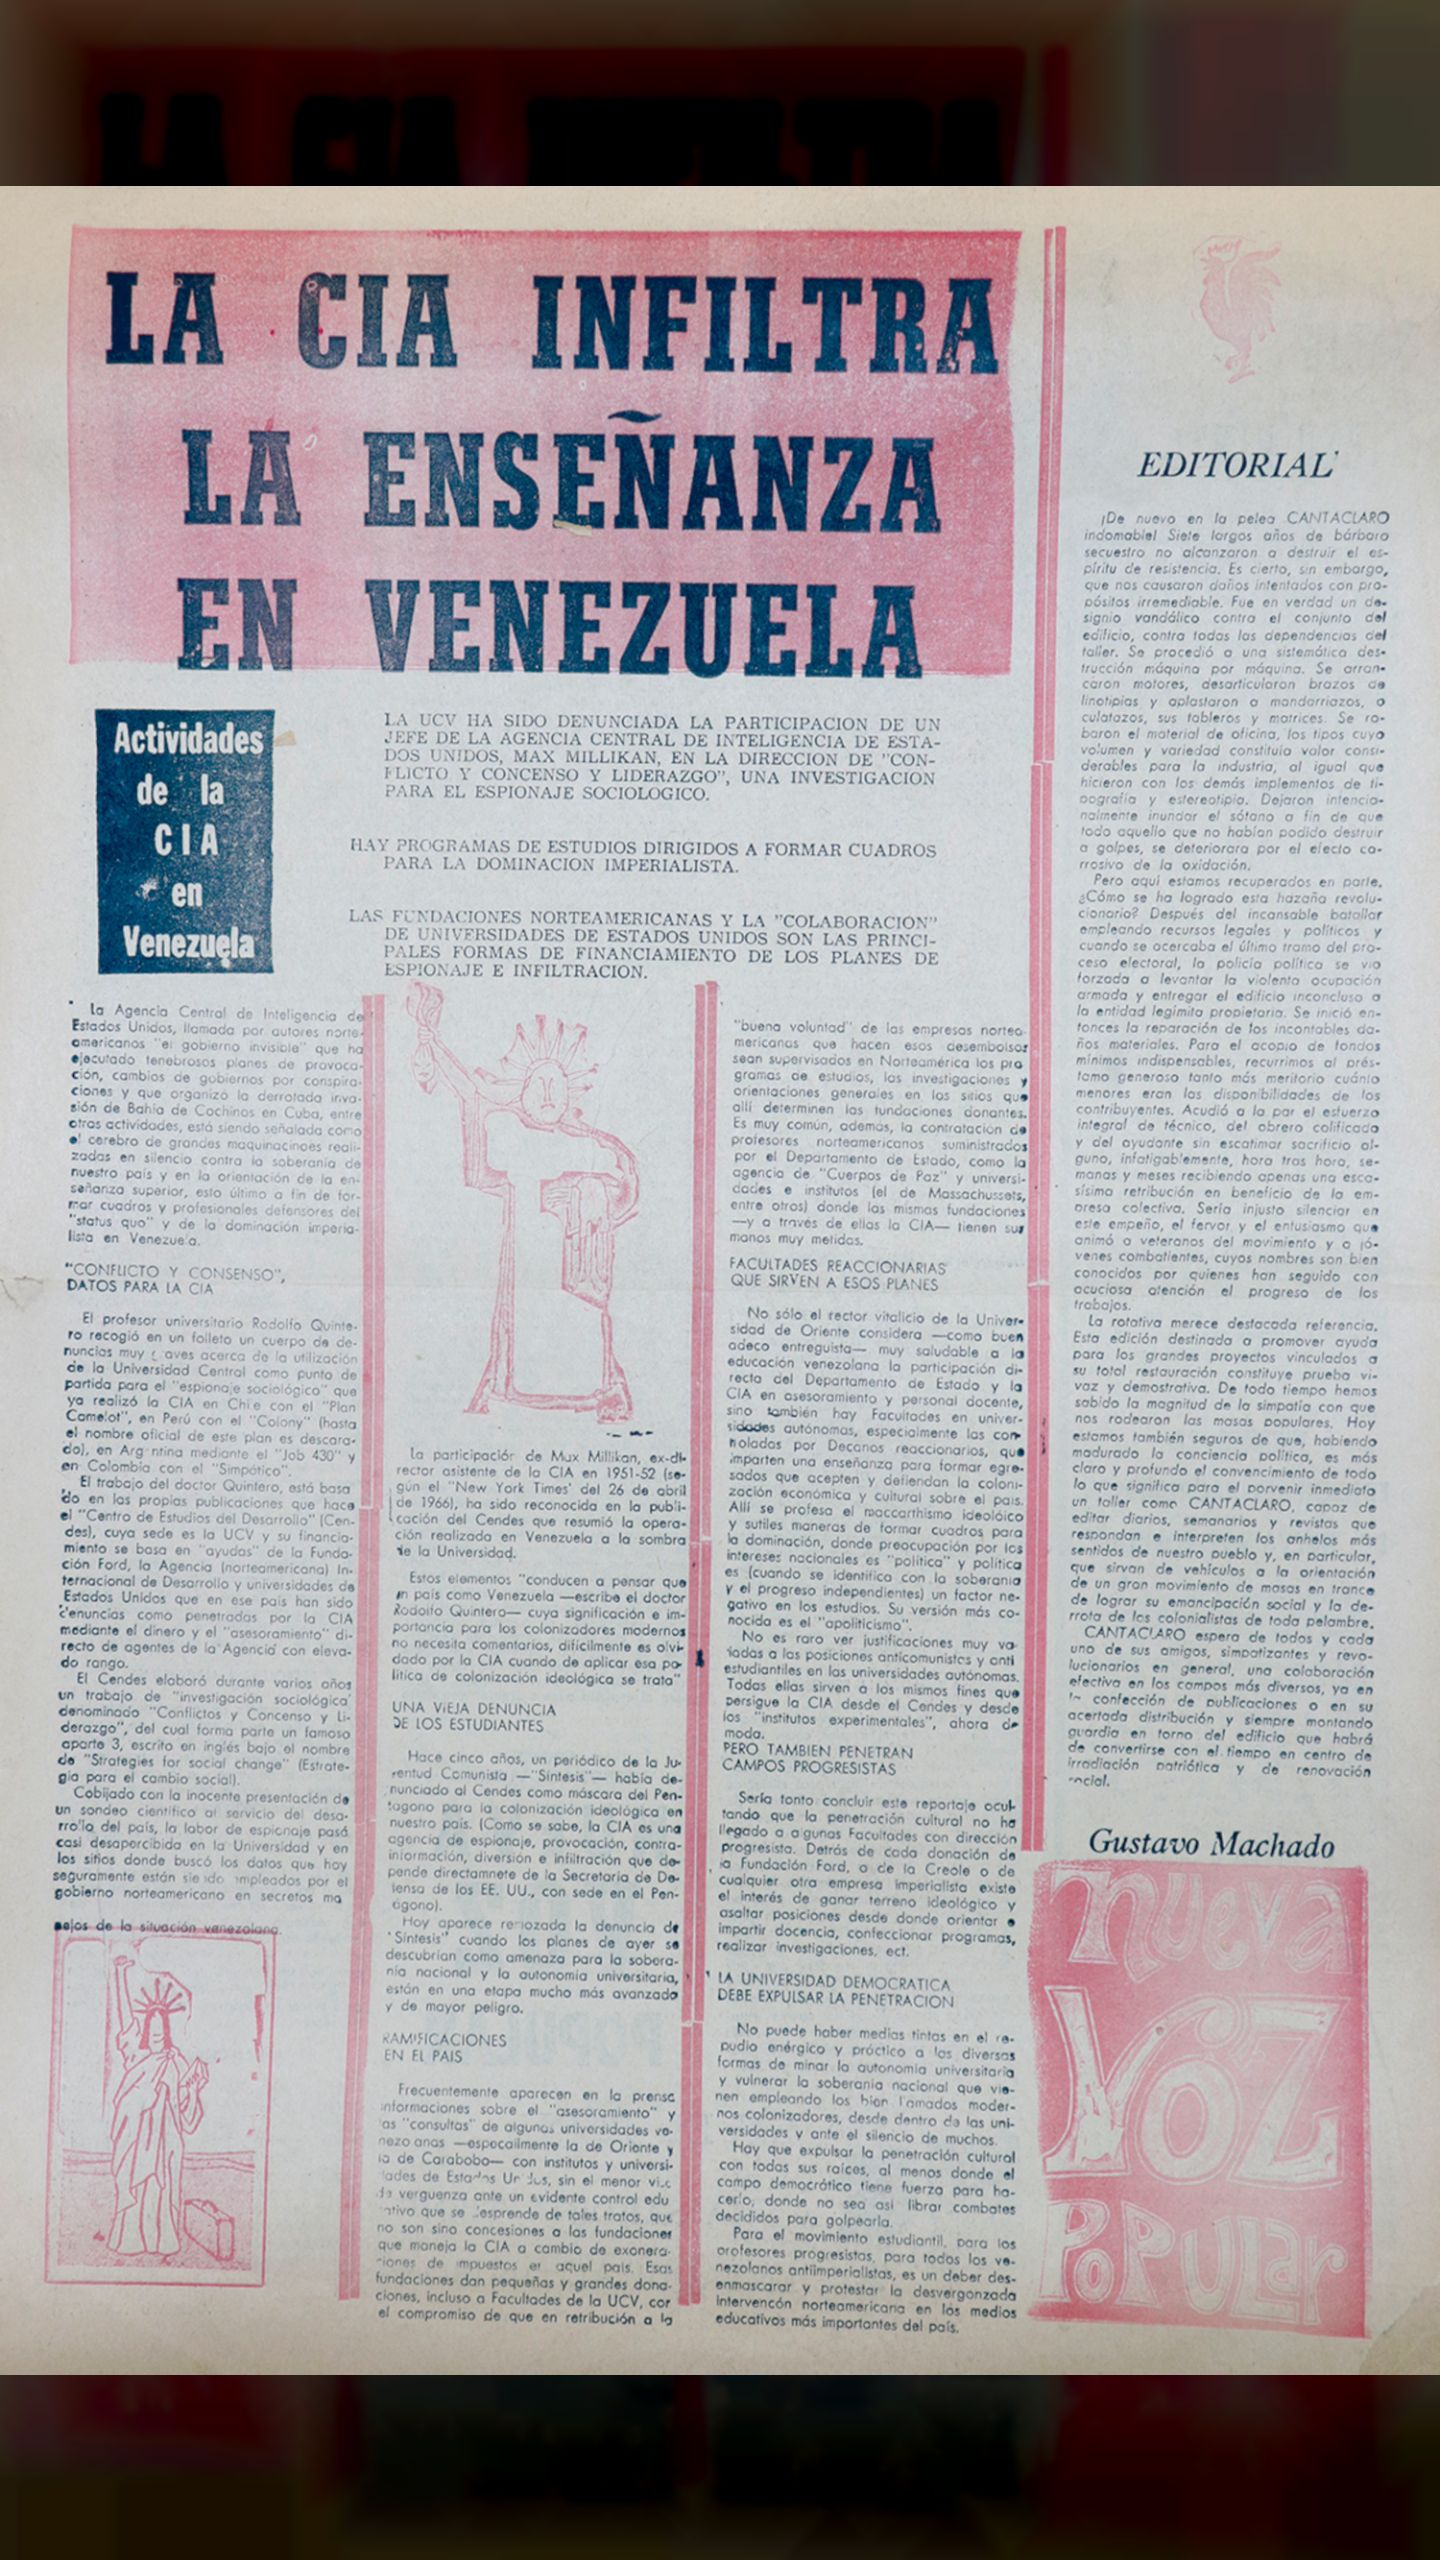 La CIA infiltra la enseñanza en Venezuela (Nueva Voz Popular, 26 de noviembre 1968)